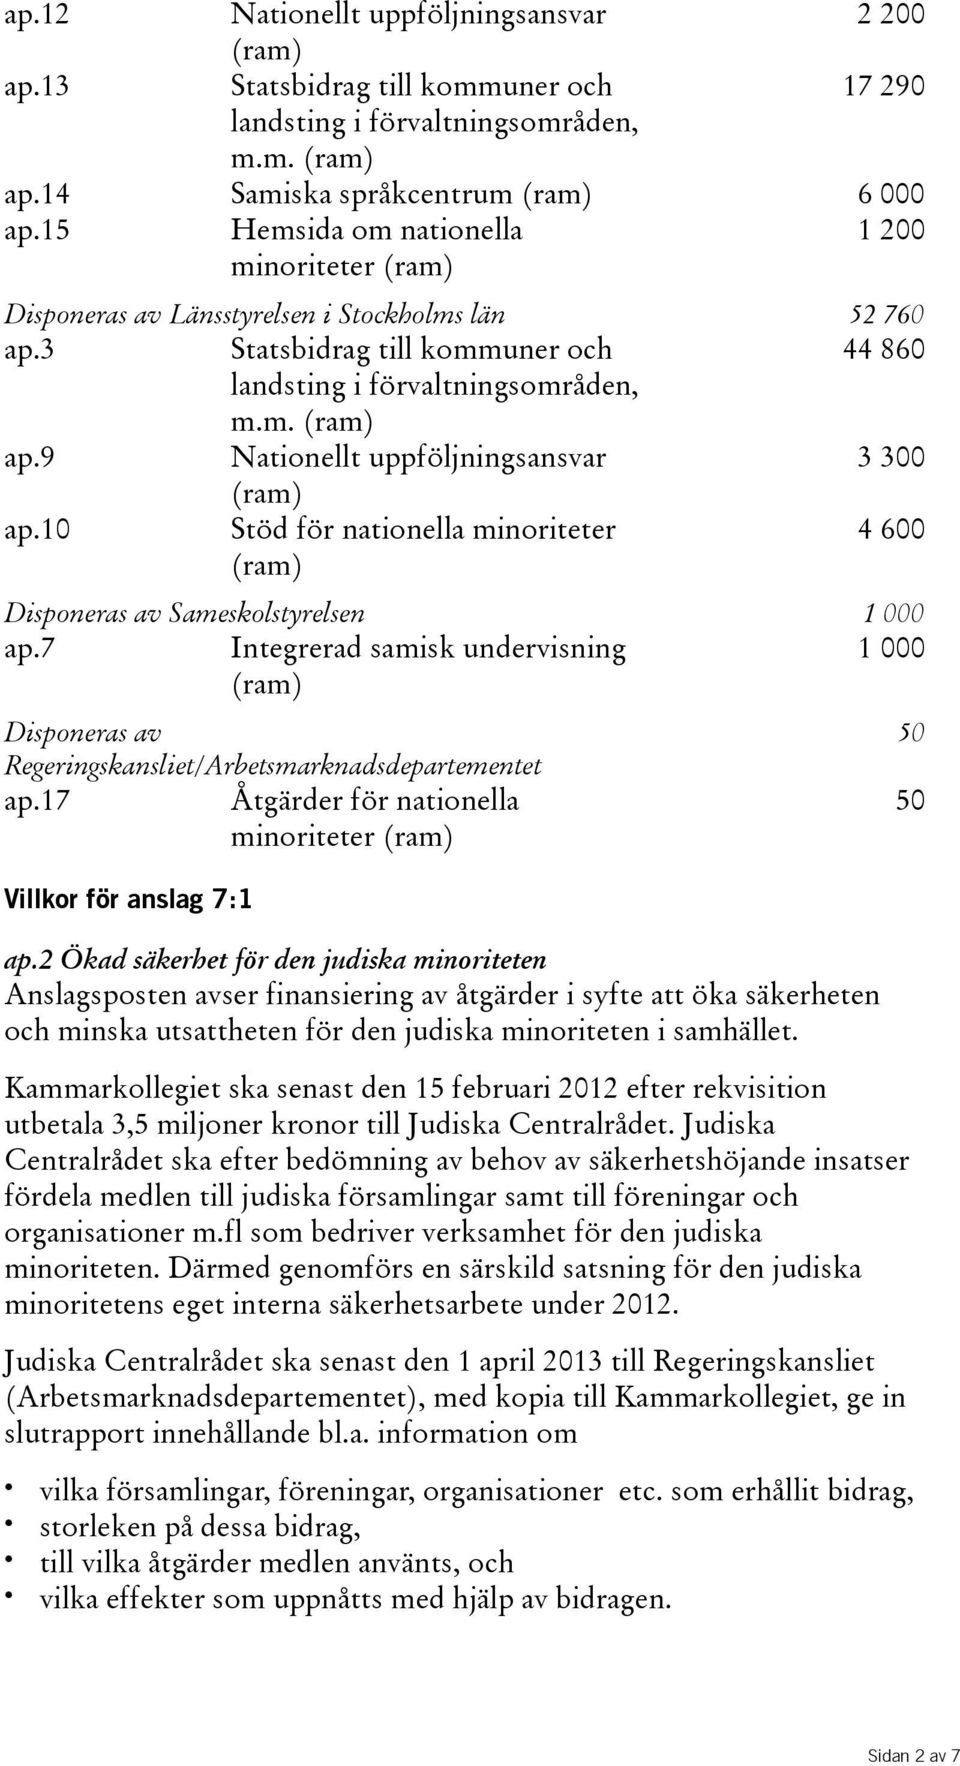 10 Stöd för nationella minoriteter 4600 Disponeras av Sameskolstyrelsen 1 000 ap.7 Integrerad samisk undervisning 1000 Disponeras av Regeringskansliet/Arbetsmarknadsdepartementet ap.